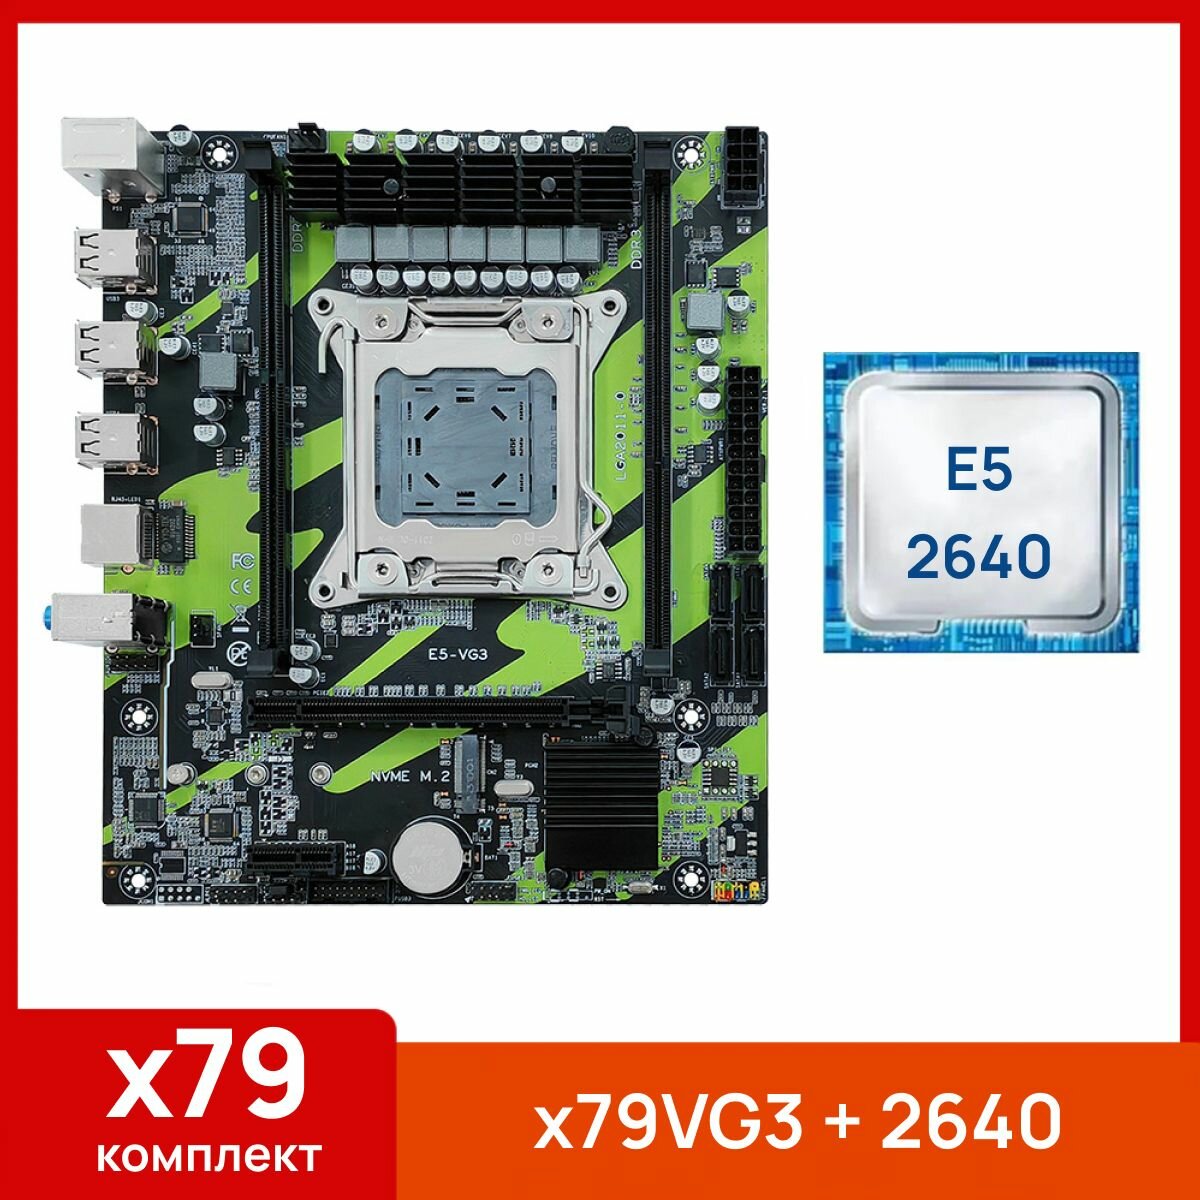 Комплект: Atermiter X79VG3 + Xeon E5 2640